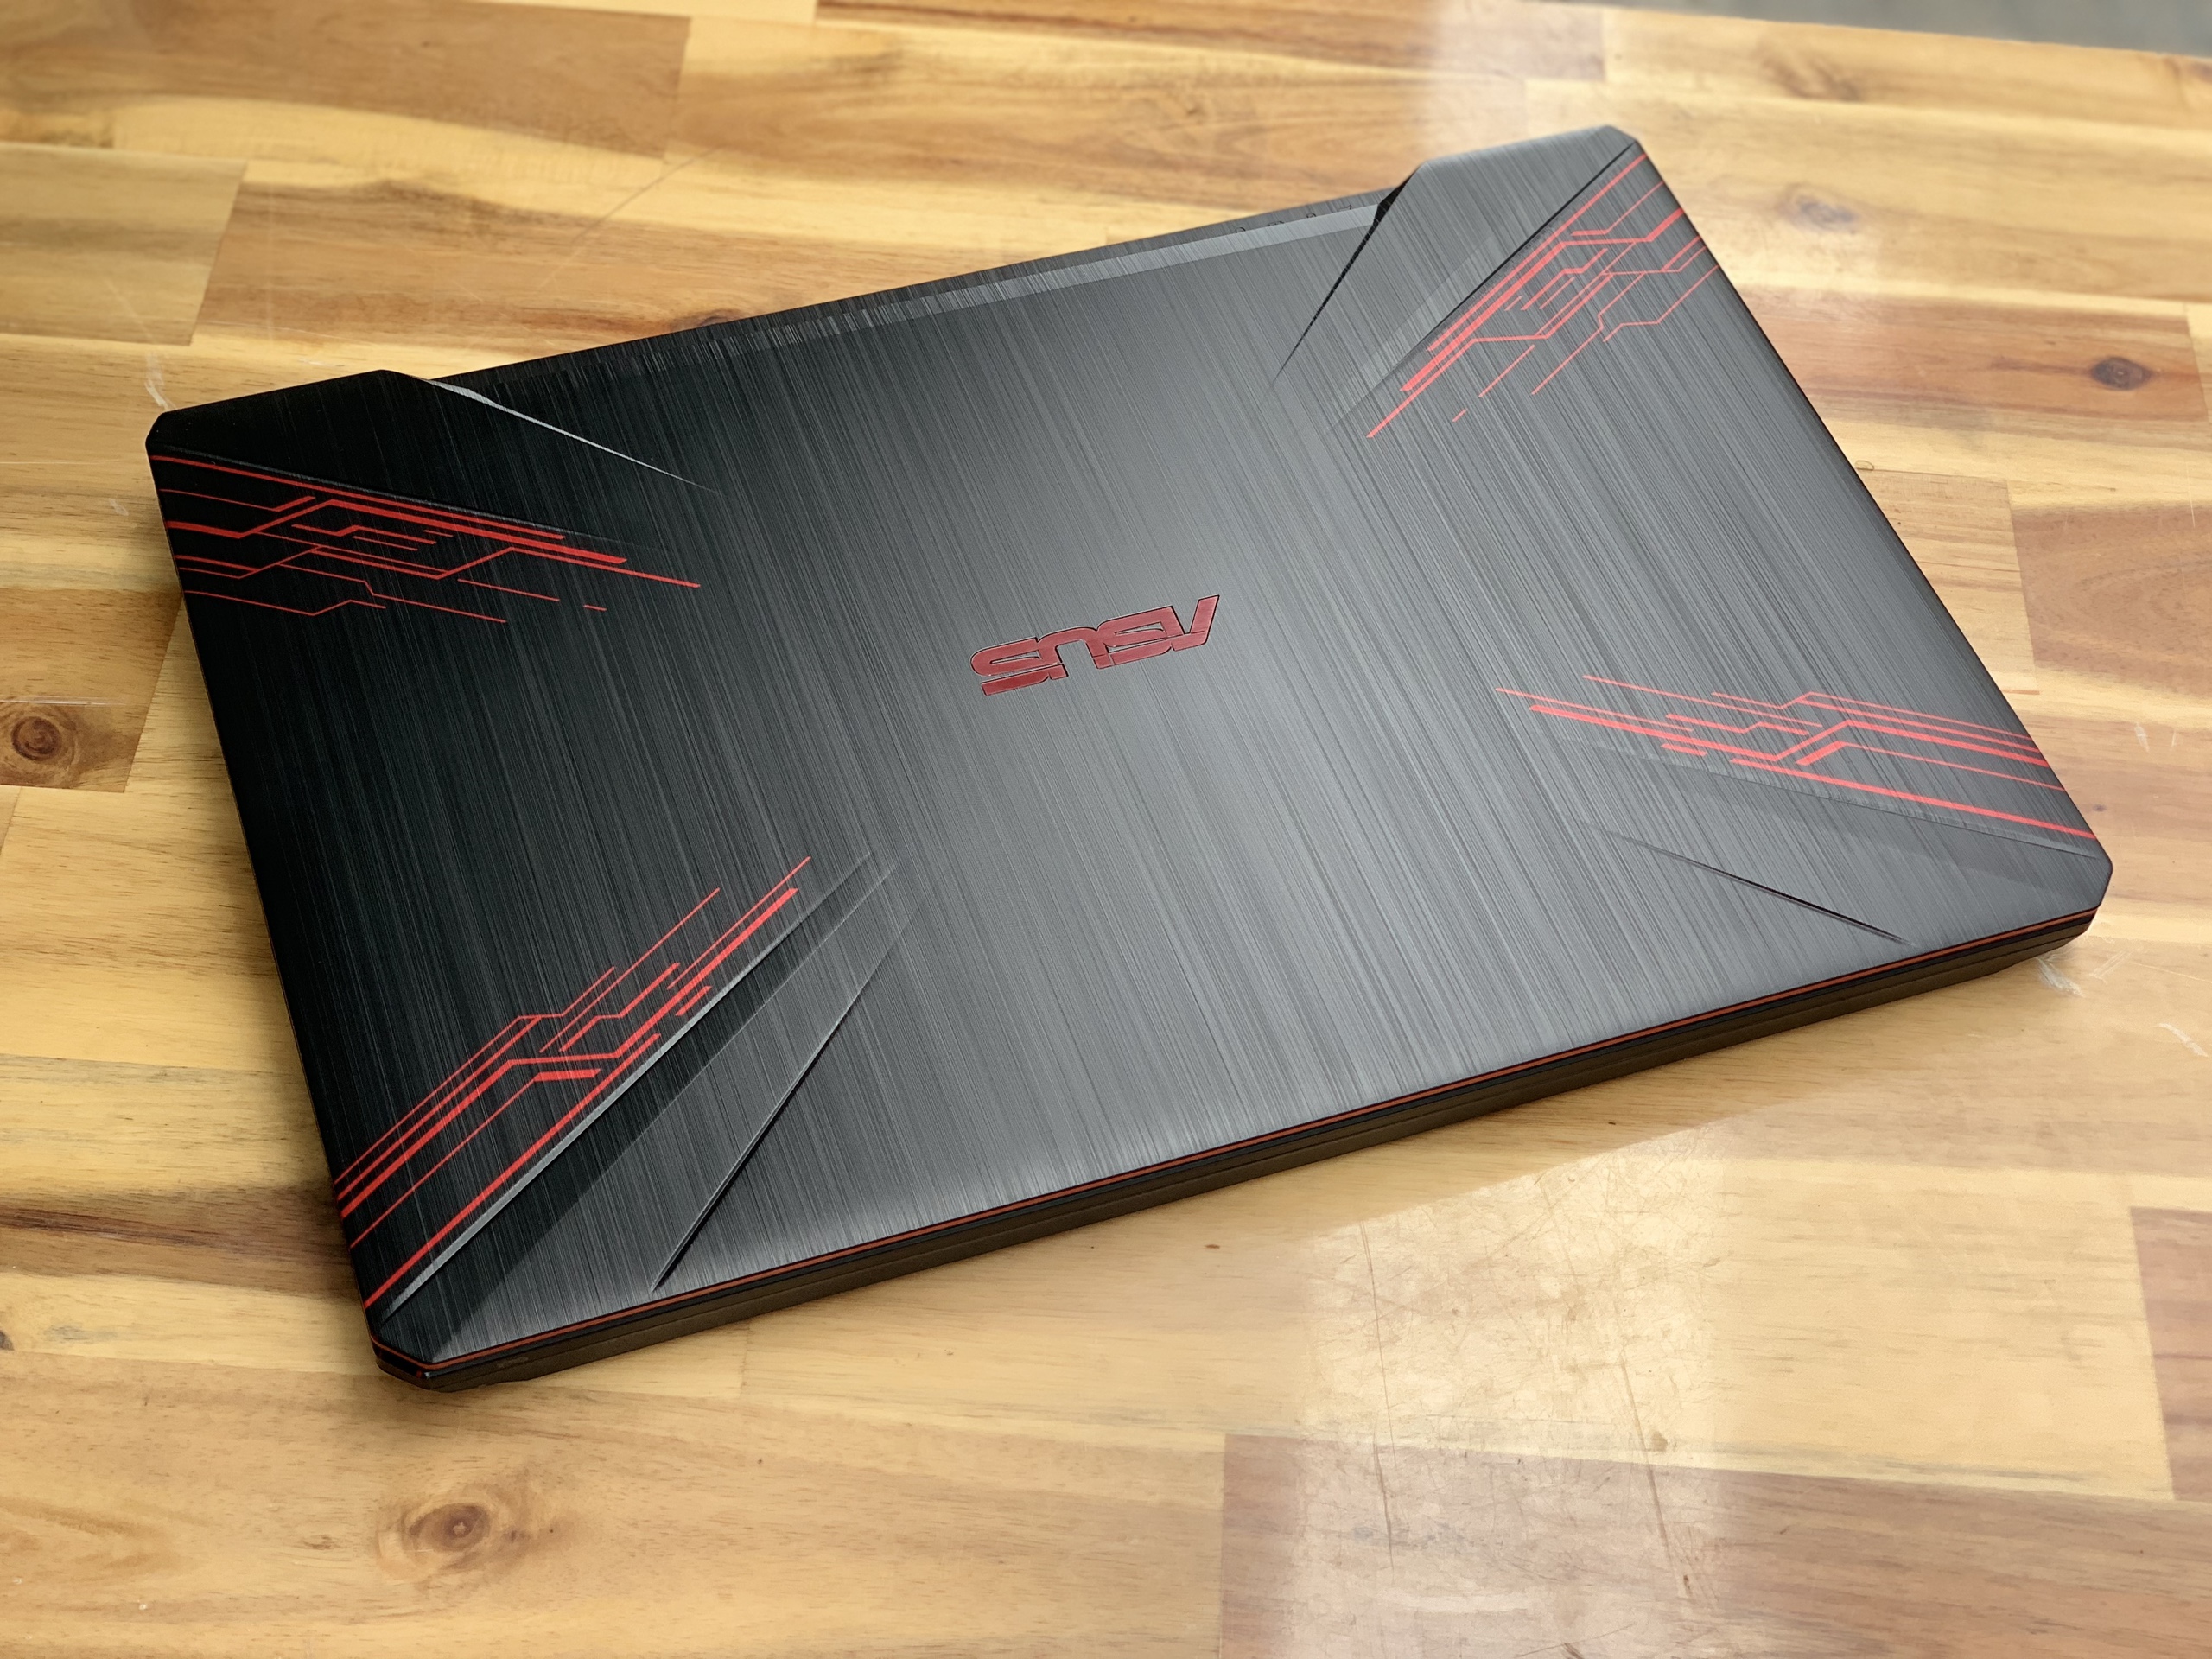 Laptop Asus TUF FX504GE, i7 8750H 8G SSD128/1THDD GTX1050Ti Full HD Còn BH 10/2020 Giá rẻ1